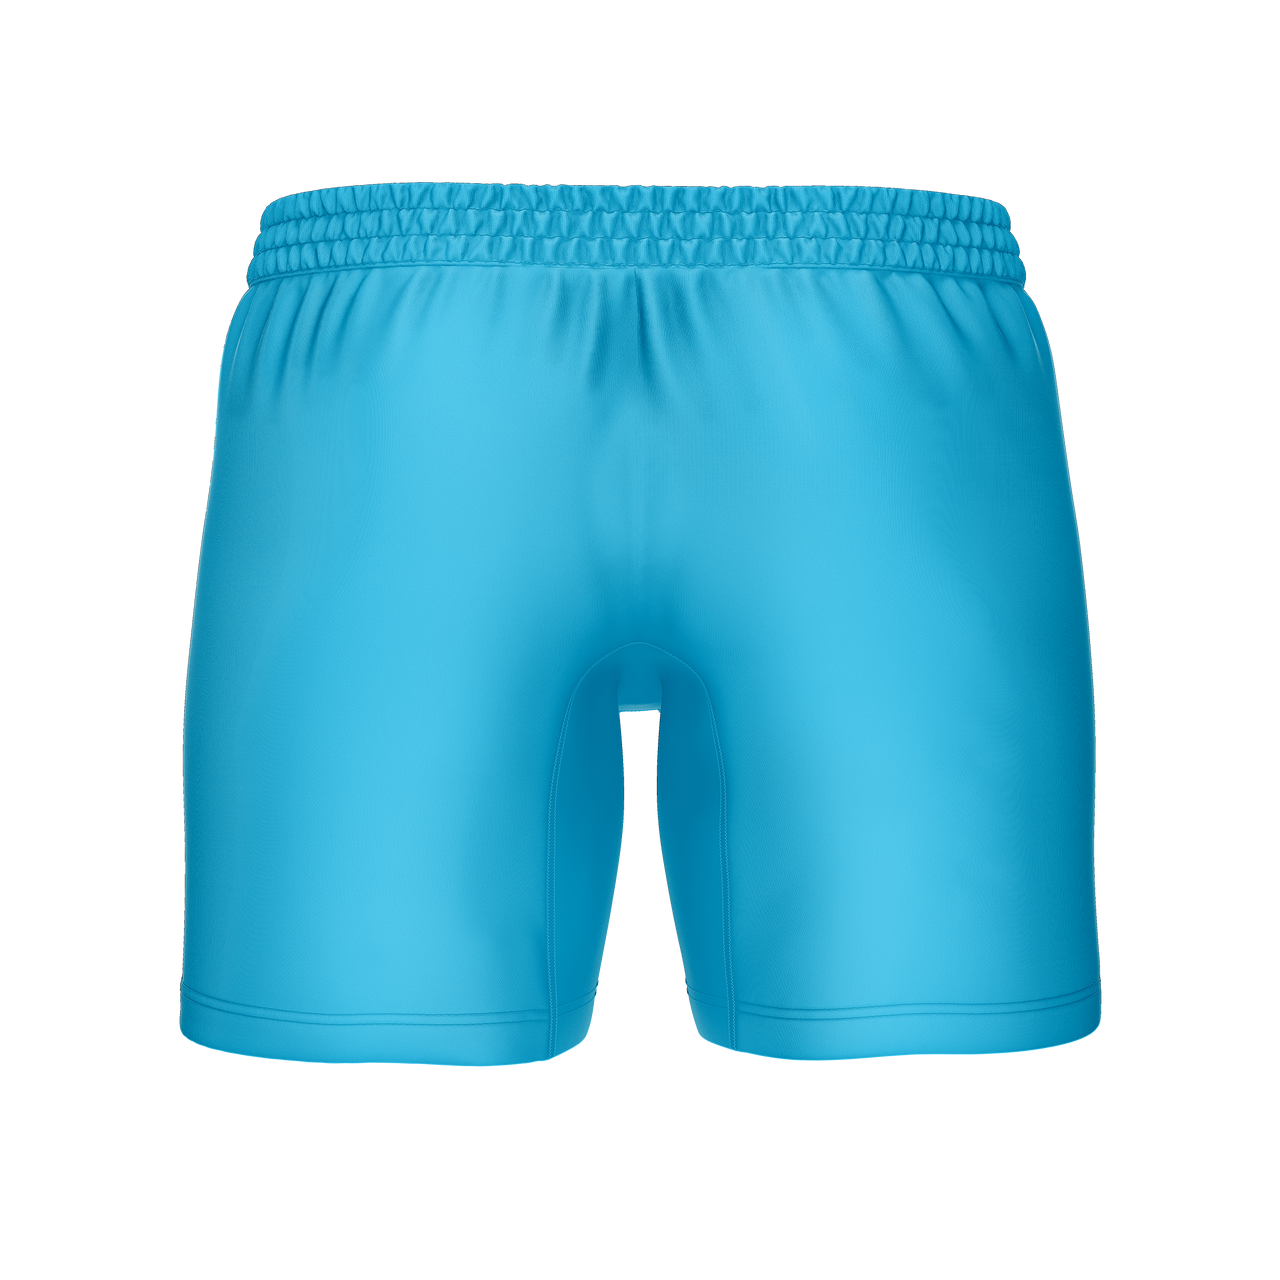 Pantalones cortos de entrenamiento/gimnasio Vanimals